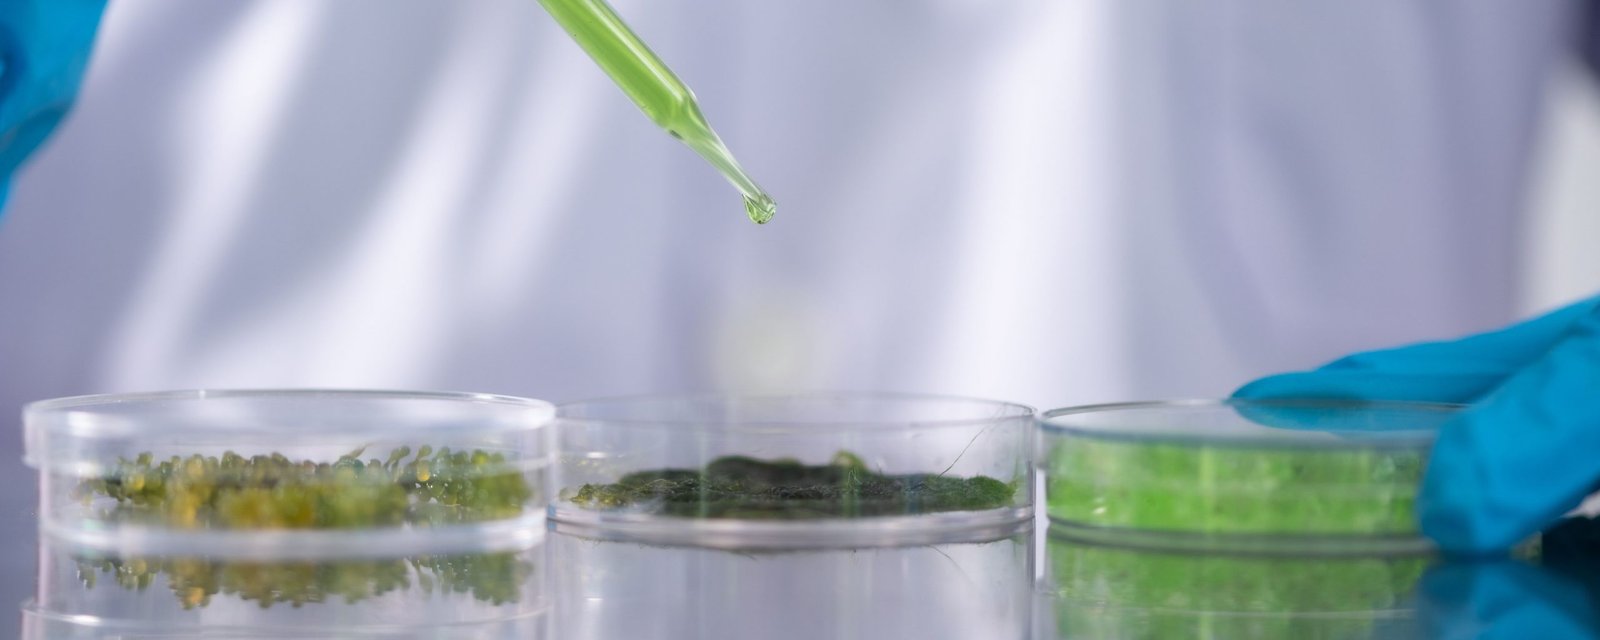 Alghe e Innovazione: presentiamo 3 startup all’avanguardia dell’industria delle alghe 